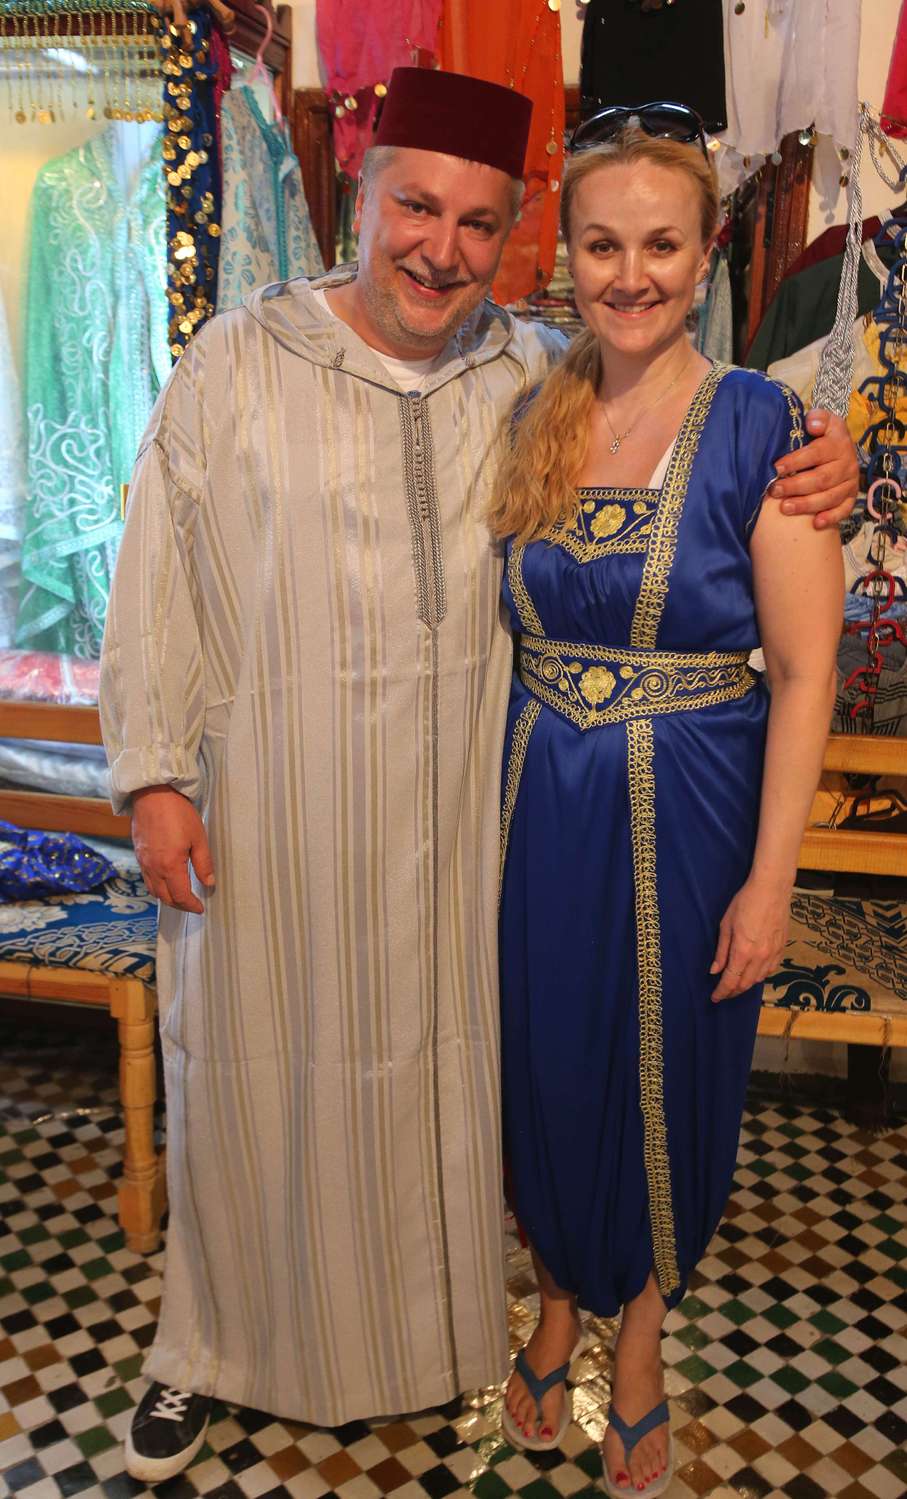 Speciálnímu marockému oděvu neodolal ani přítel Milan, který si kompletní outfit nakonec i koupil!